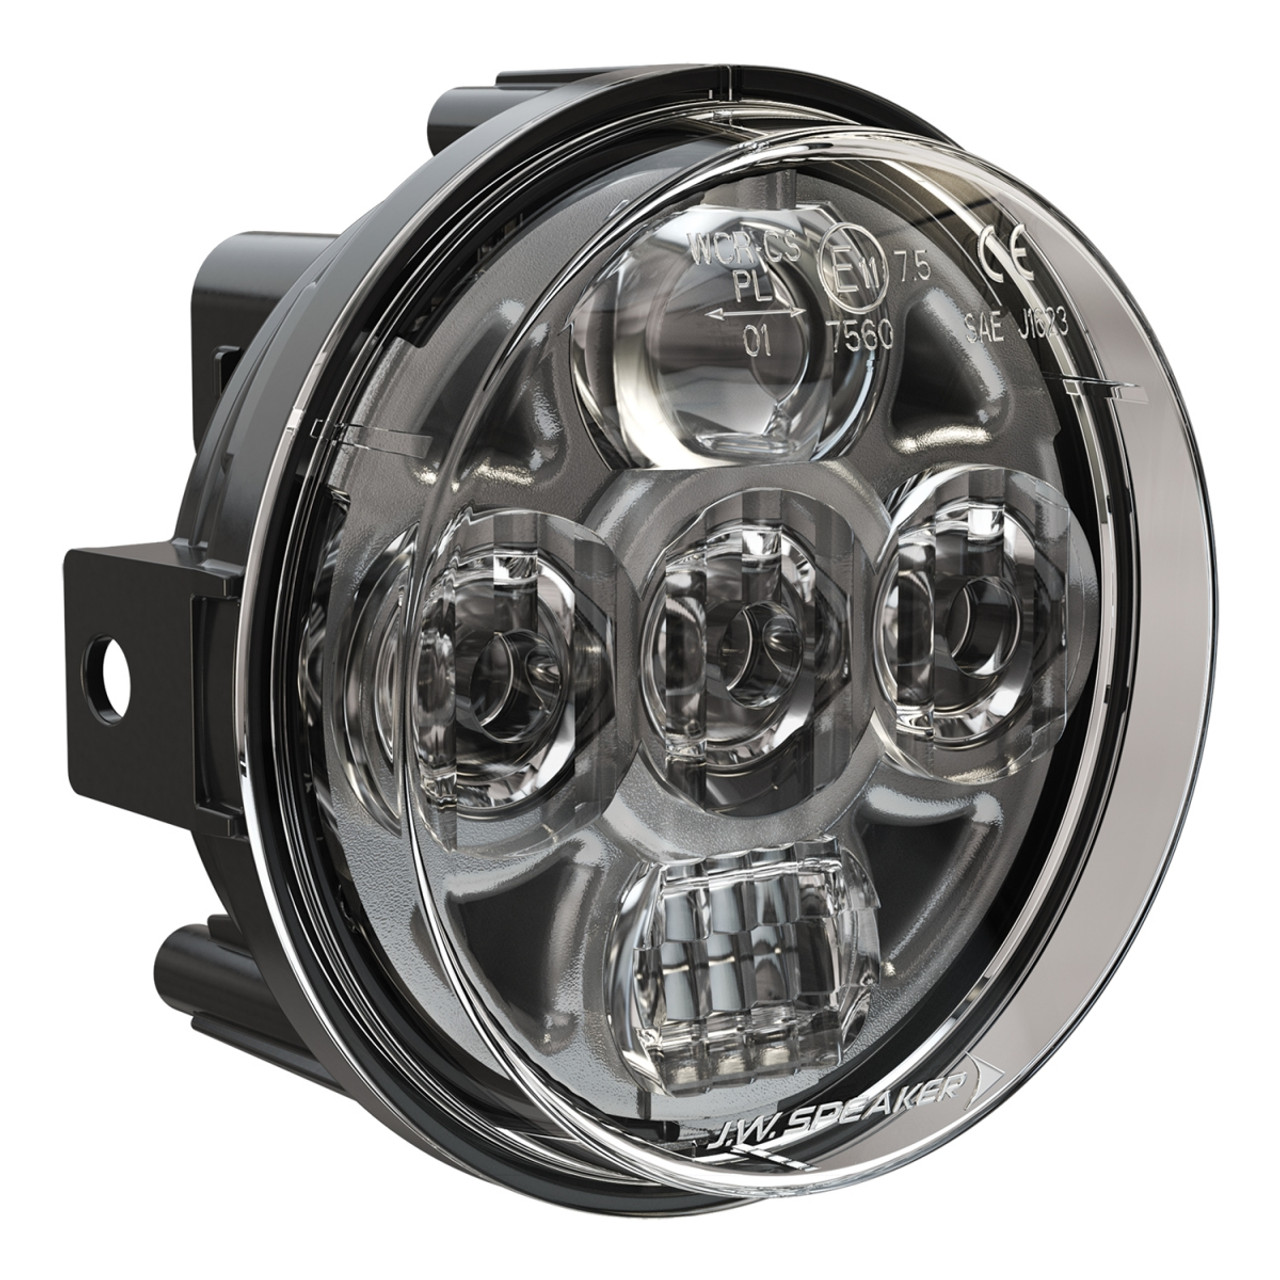 J.W. Speaker 12-24V SAE/ECE LED High/Low Beam Headlight - Model 8415 Evolution